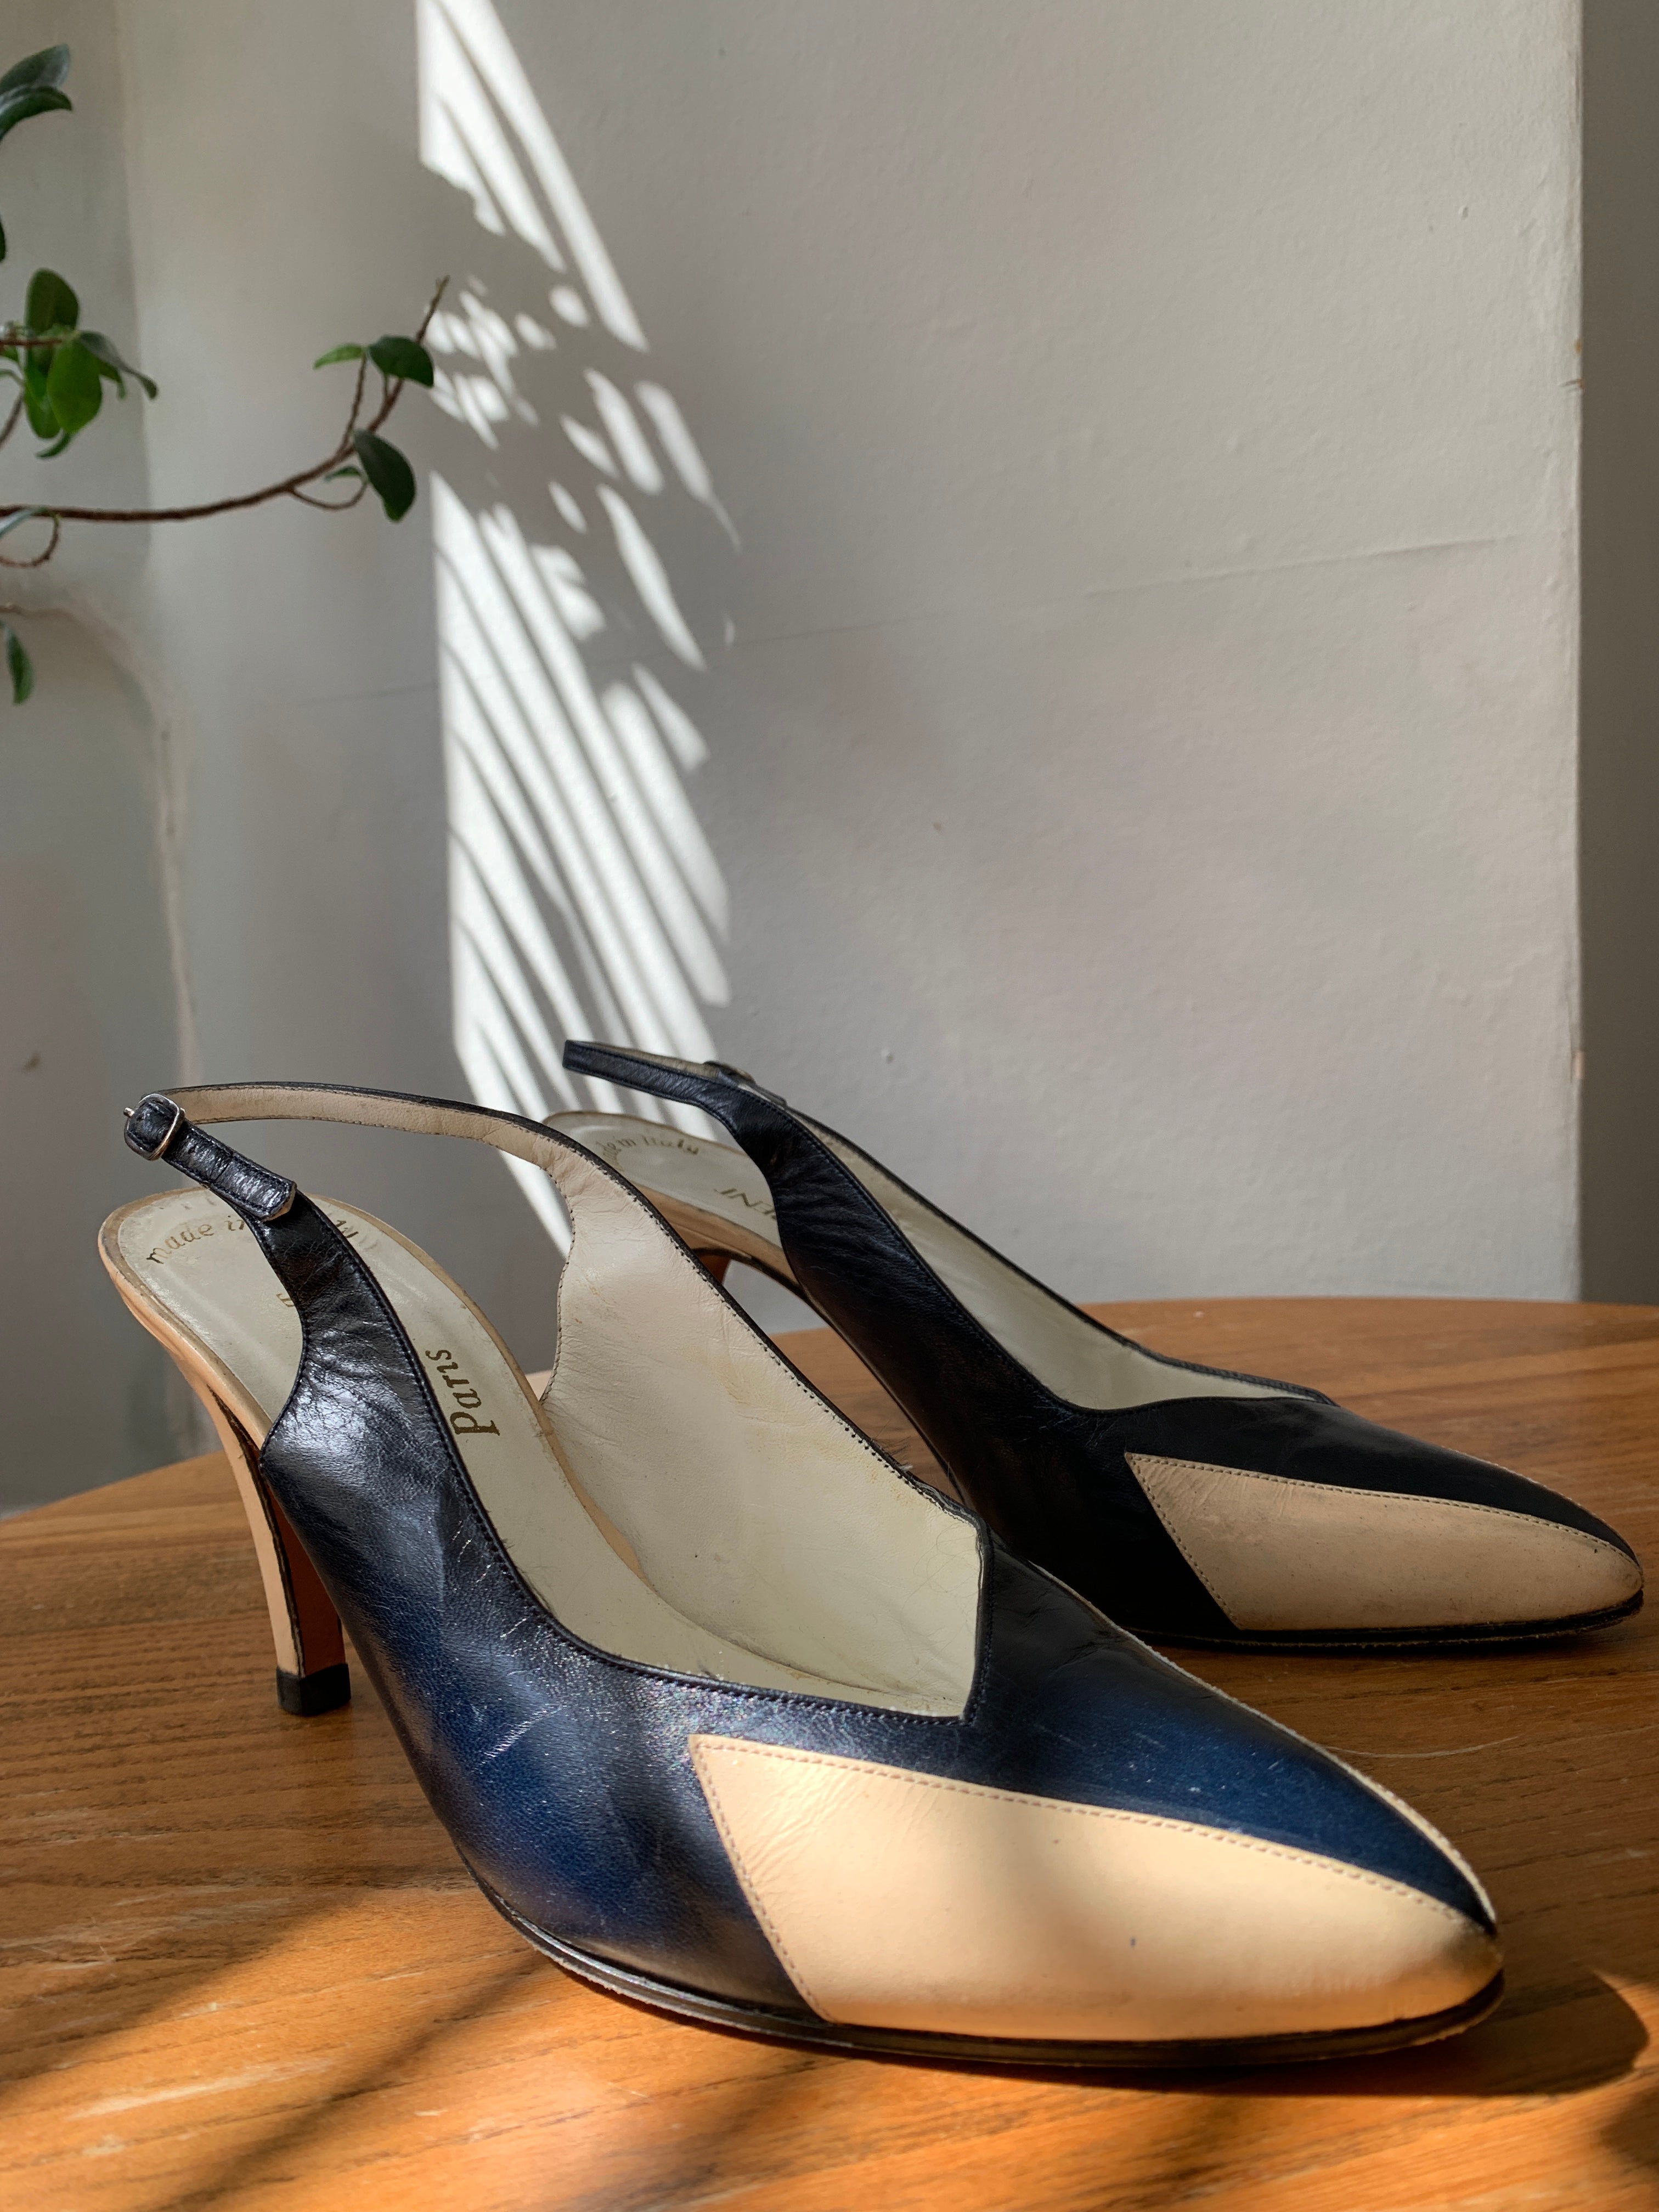 Vintage Yves Saint Laurent shoes